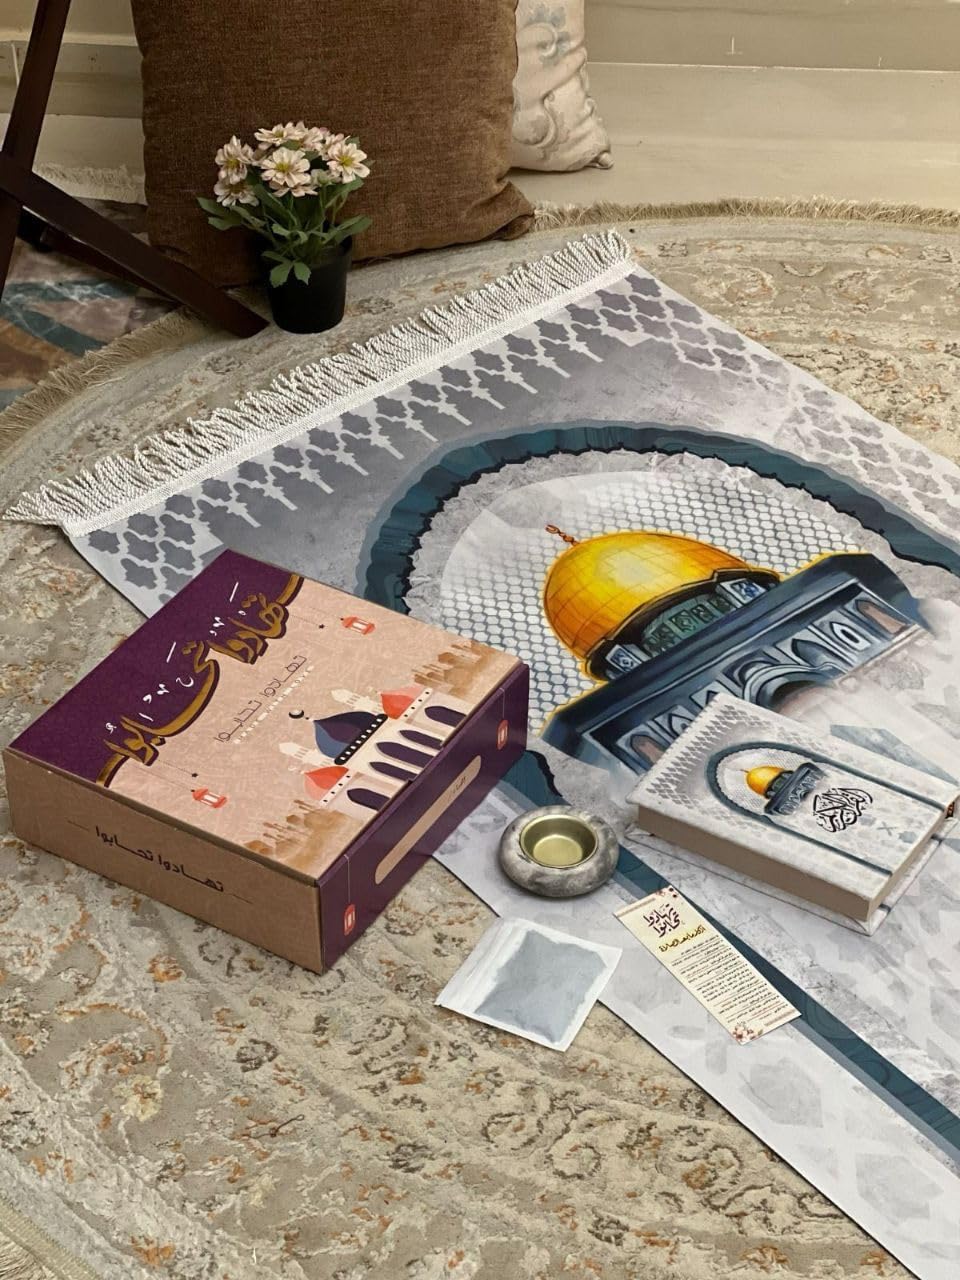 Ramadan box (velvet rug + Qur’an + marble incense burner + Azkar card “Sahab Interlude” + incense) Calm down and love the best material (Al-Aqsa Mosque)